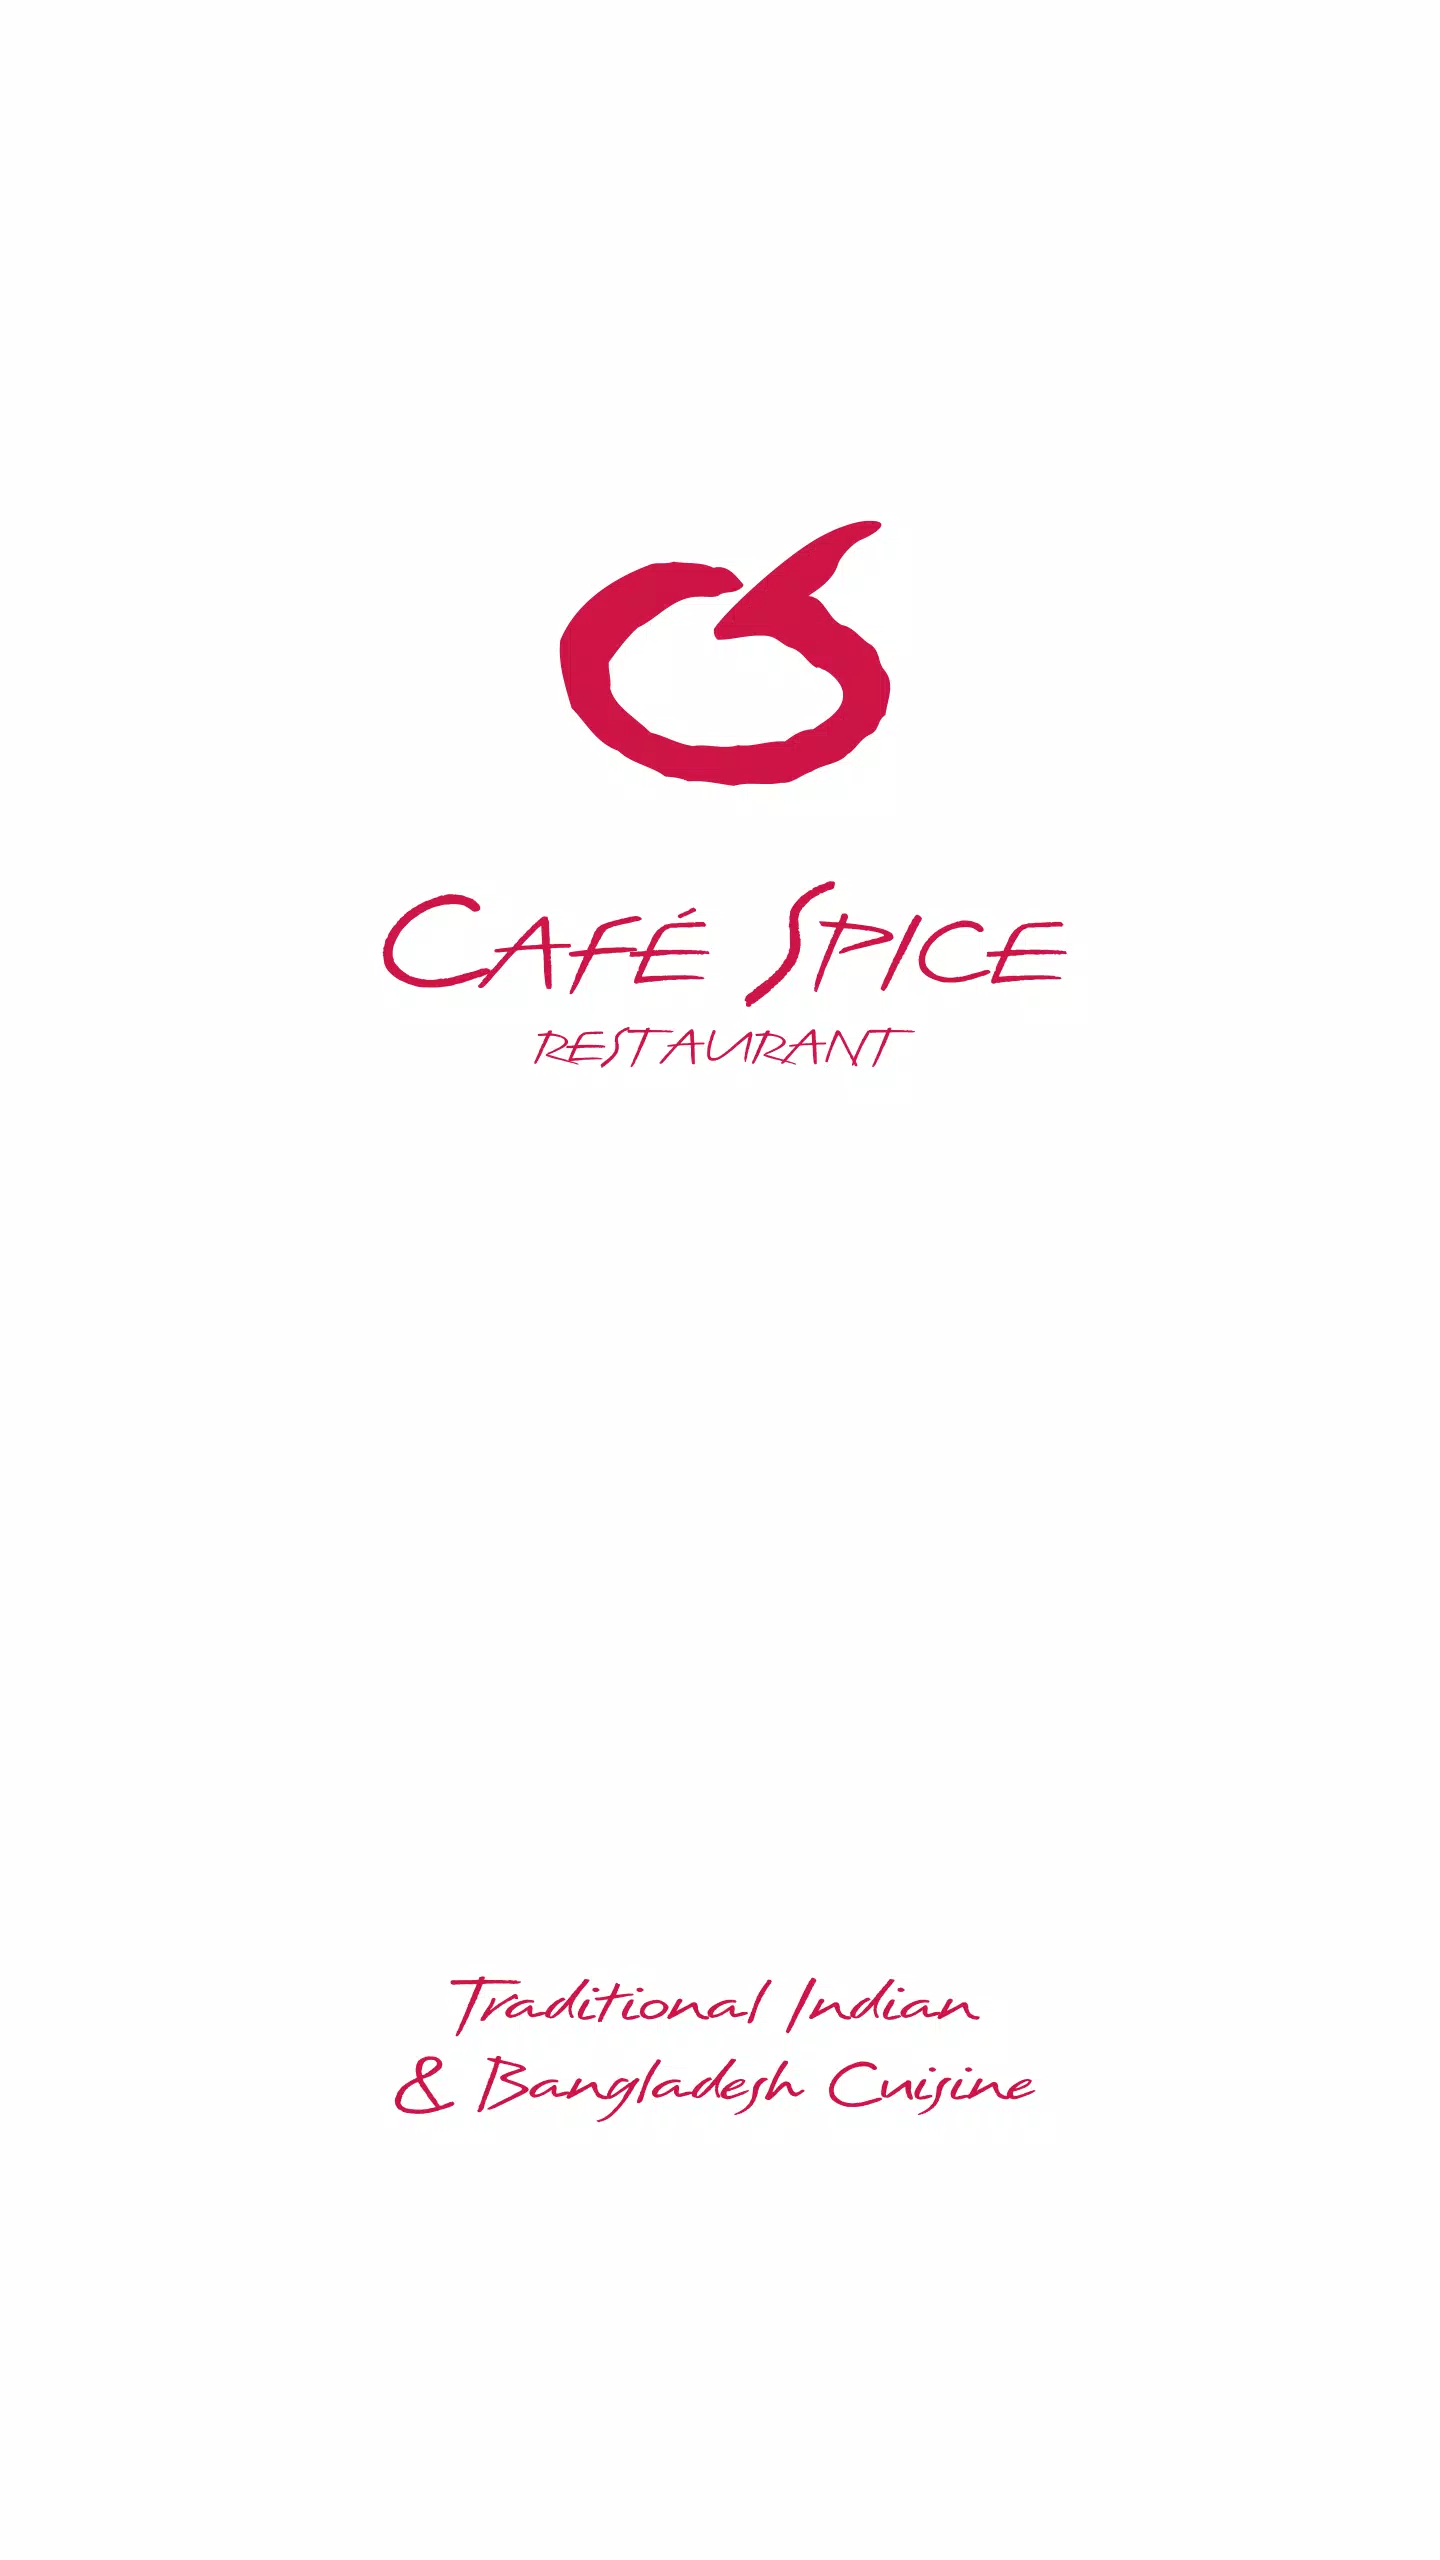 Cafe Spice Jersey APK pour Android Télécharger